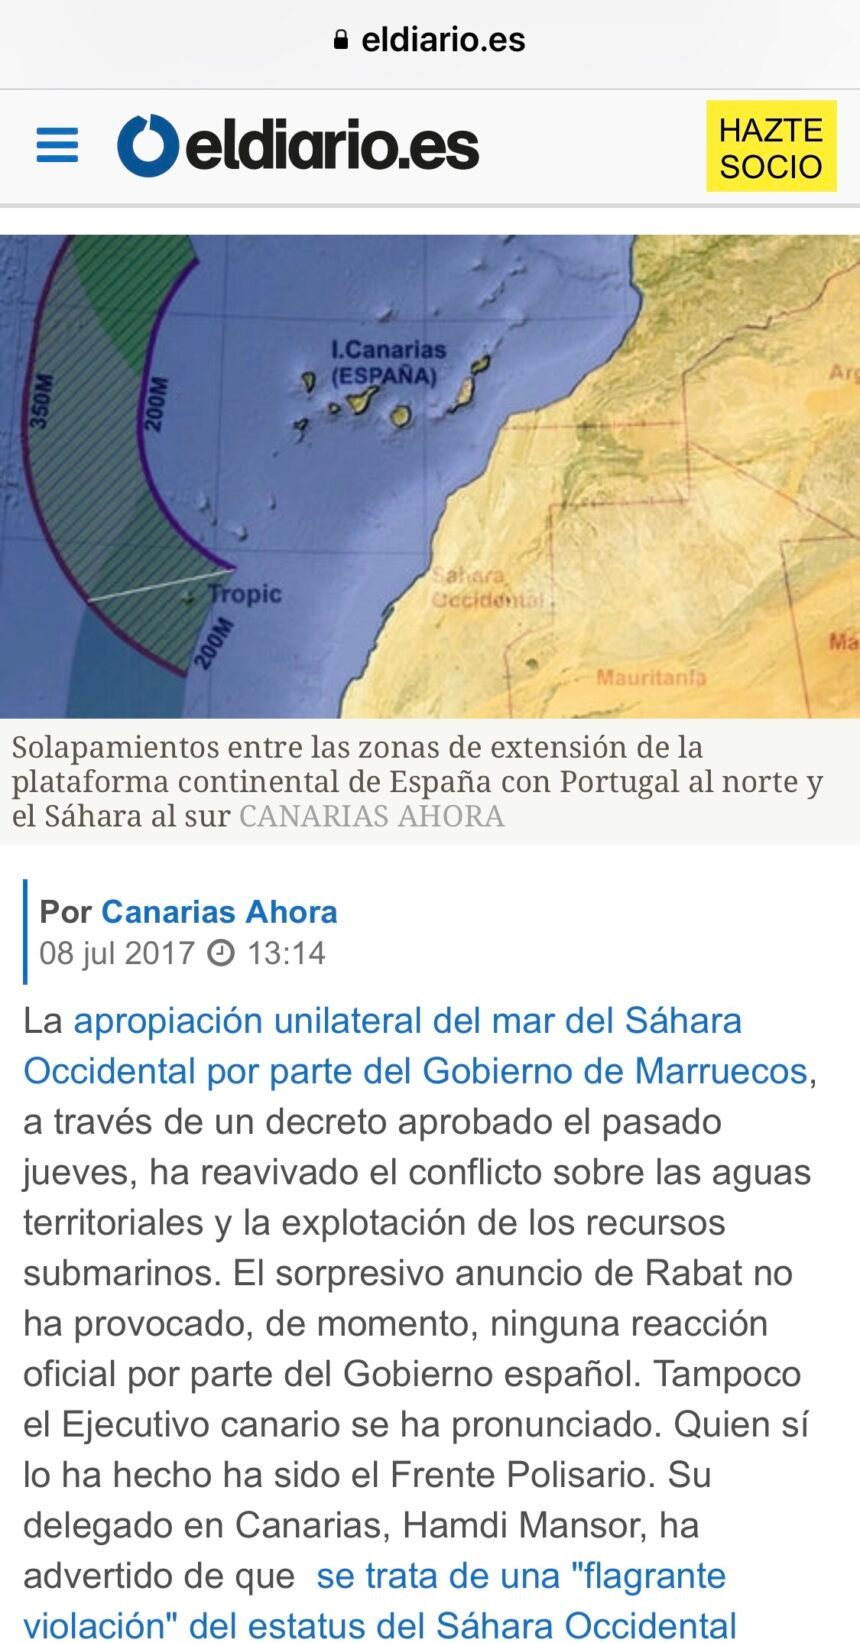 El telurio de las ‘abuelas de Canarias’, clave en la apropiación marroquí de las aguas del Sáhara